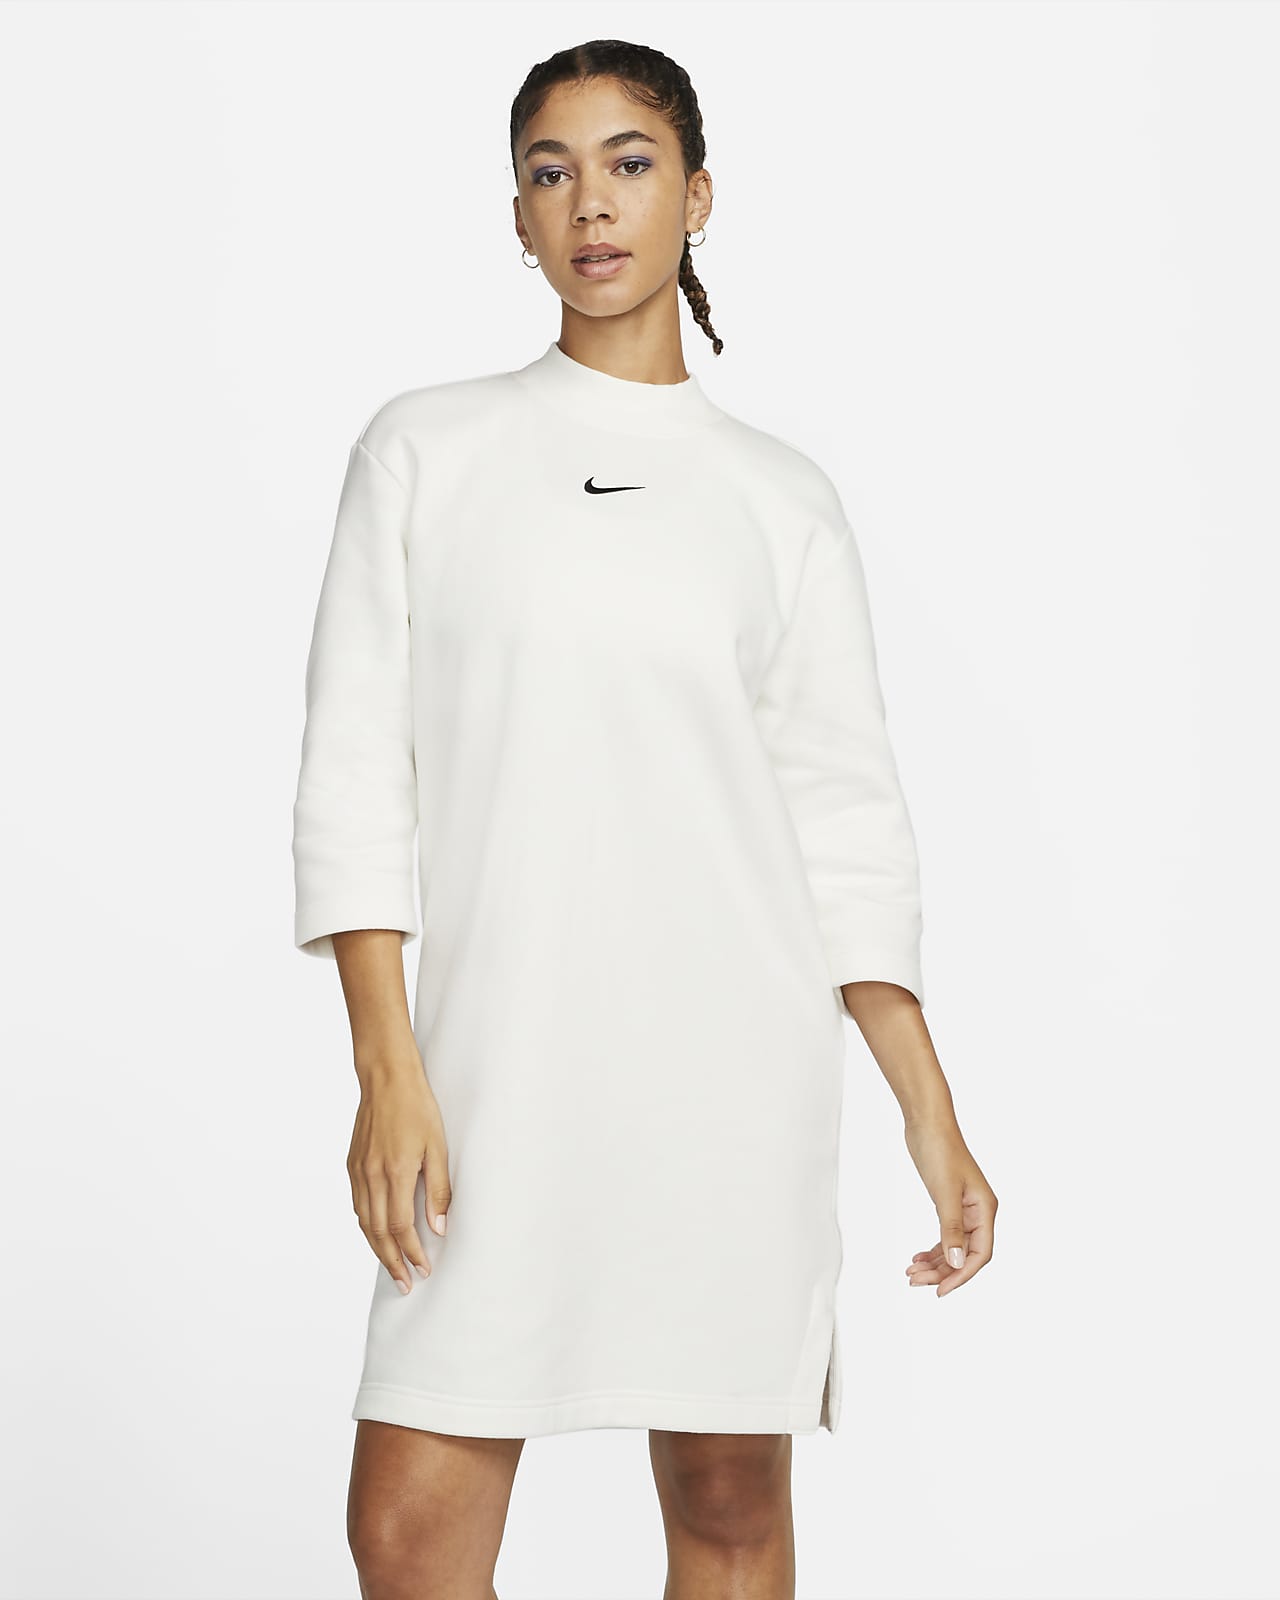 stem Reis Speciaal Nike Sportswear Phoenix Fleece Ruimvallende jurk met 3/4-mouwen. Nike BE